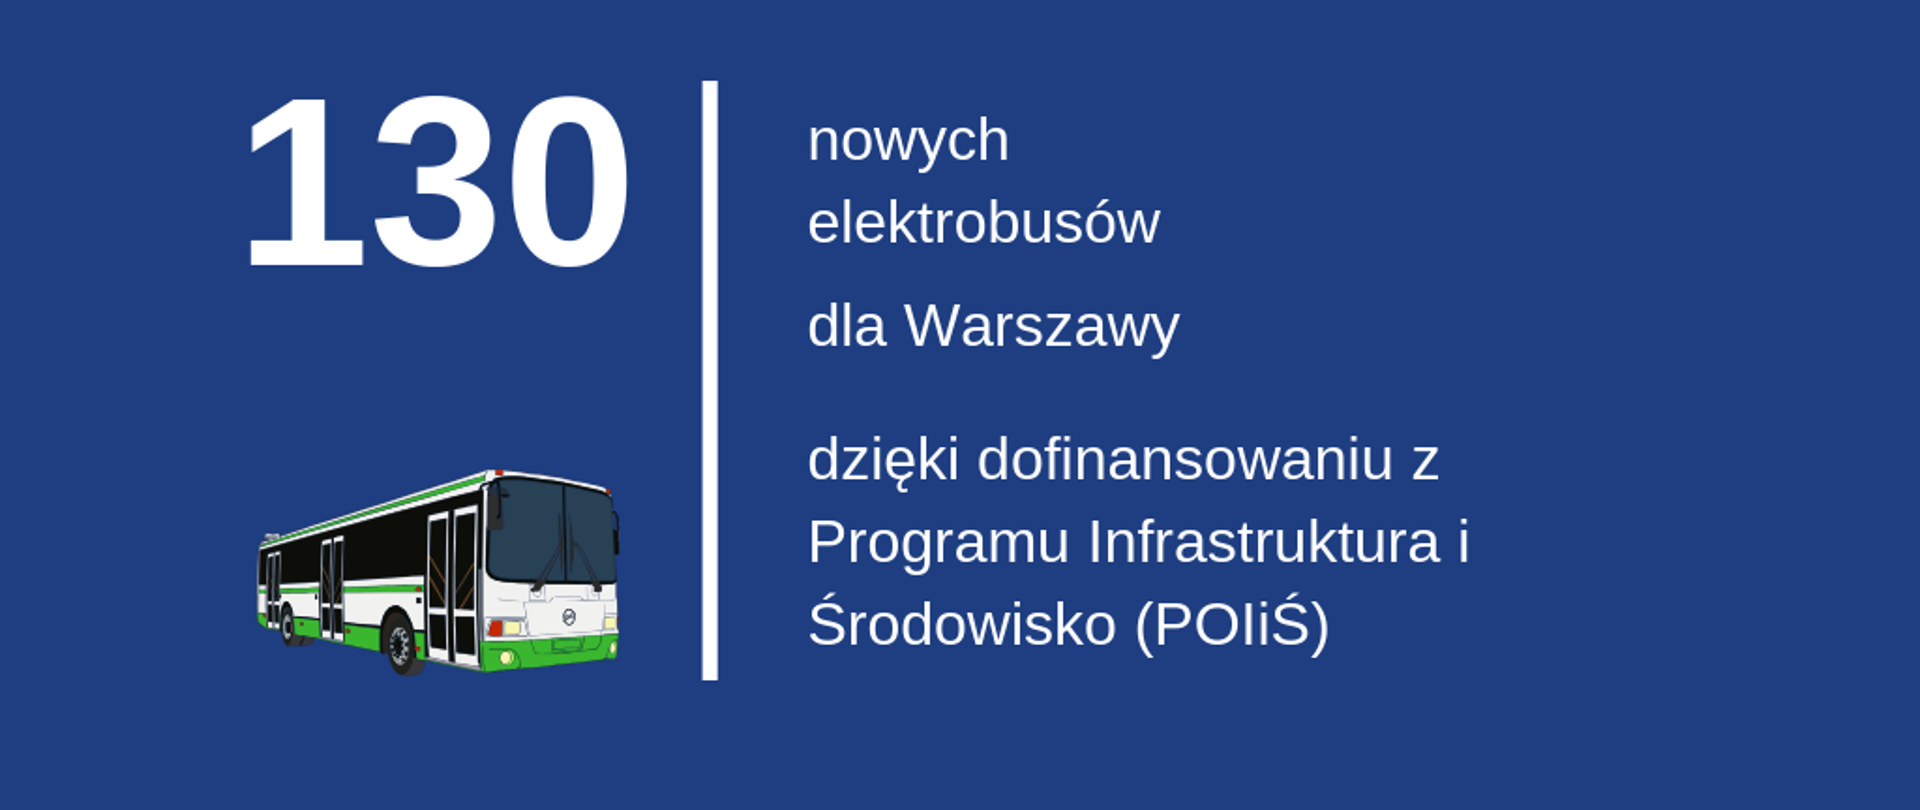 Grafika z napisem: 130 nowych elektrobusów dla Warszawy dzięki dofinansowaniu z Programu Infrastruktura i Środowisko 